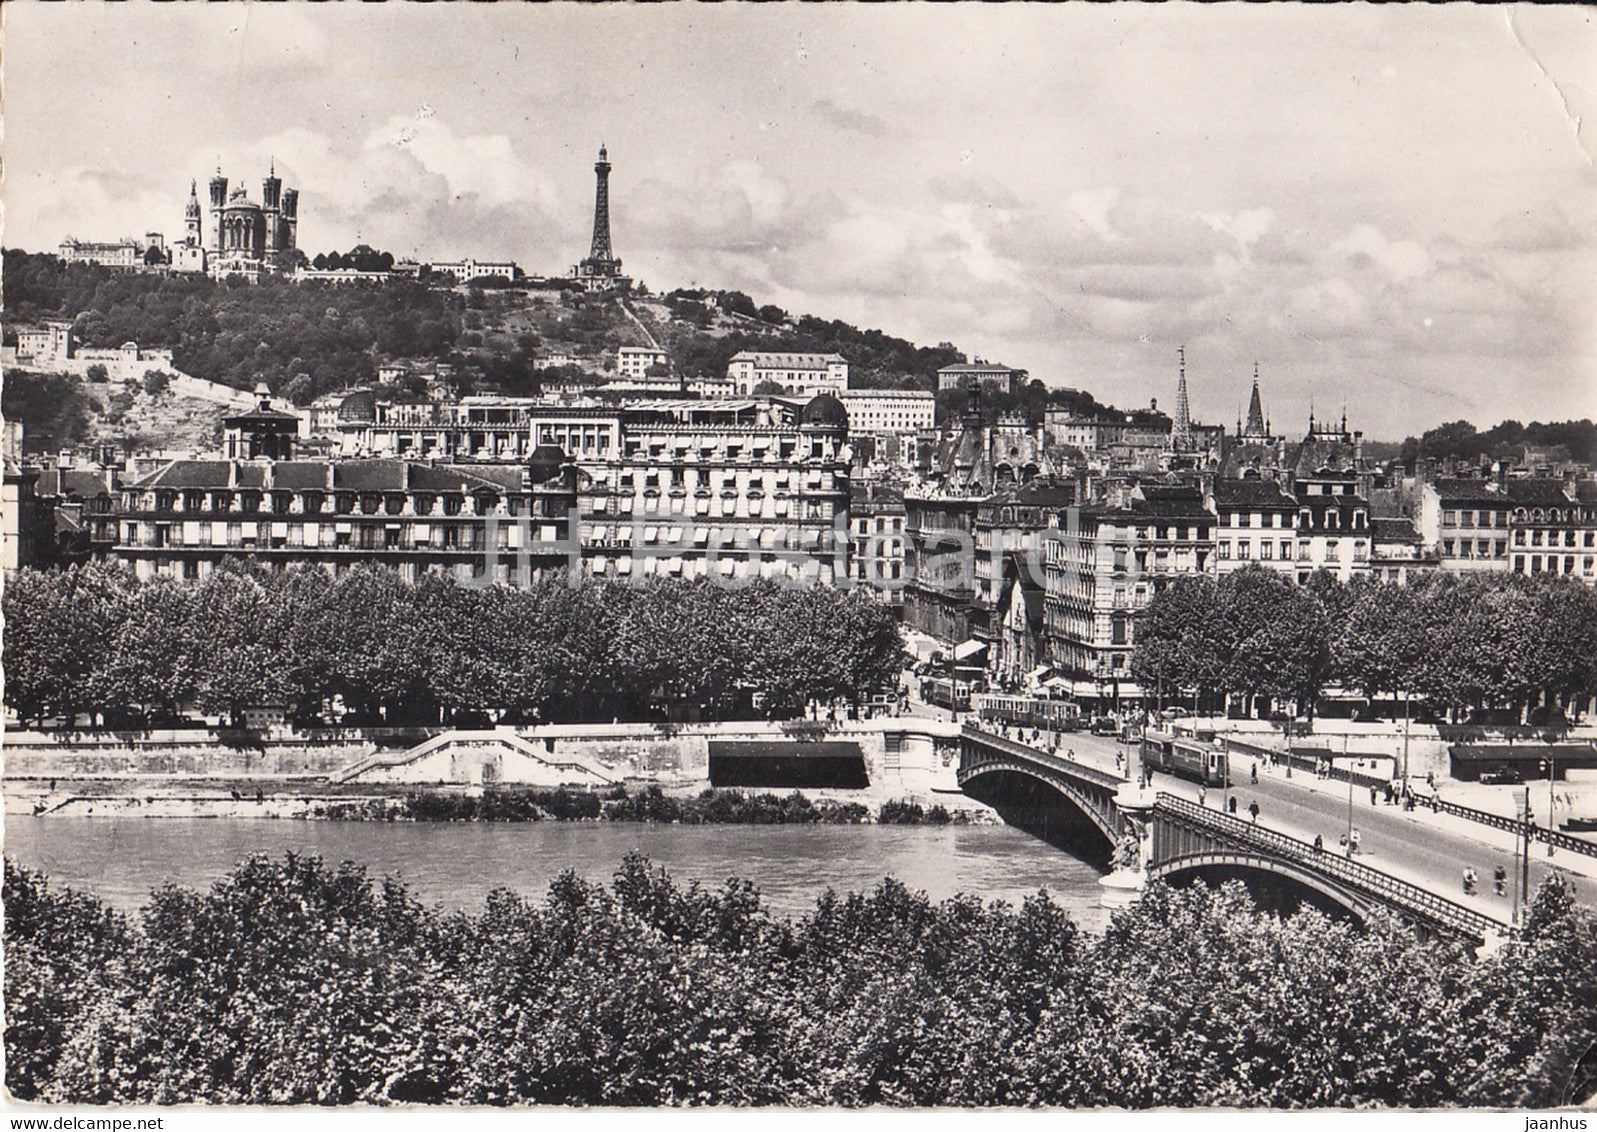 Lyon - Le Pont Lafayette sur le Rhone et la Colline de Fourviere - bridge - tram - old postcard - 1956 - France - used - JH Postcards